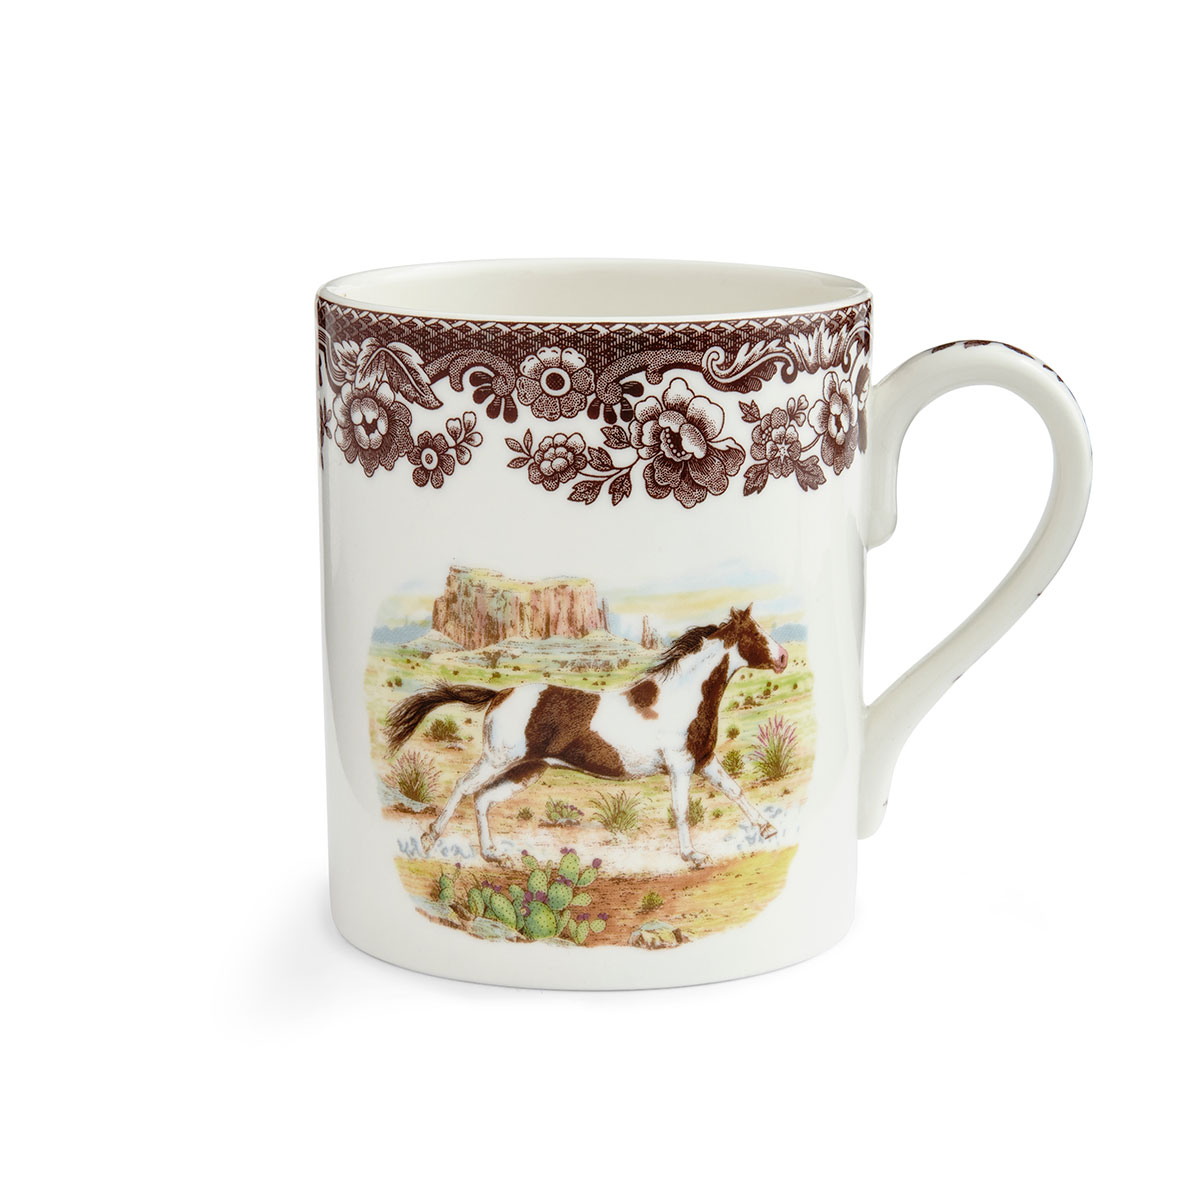 Spode Woodland Horses Mug, Paint